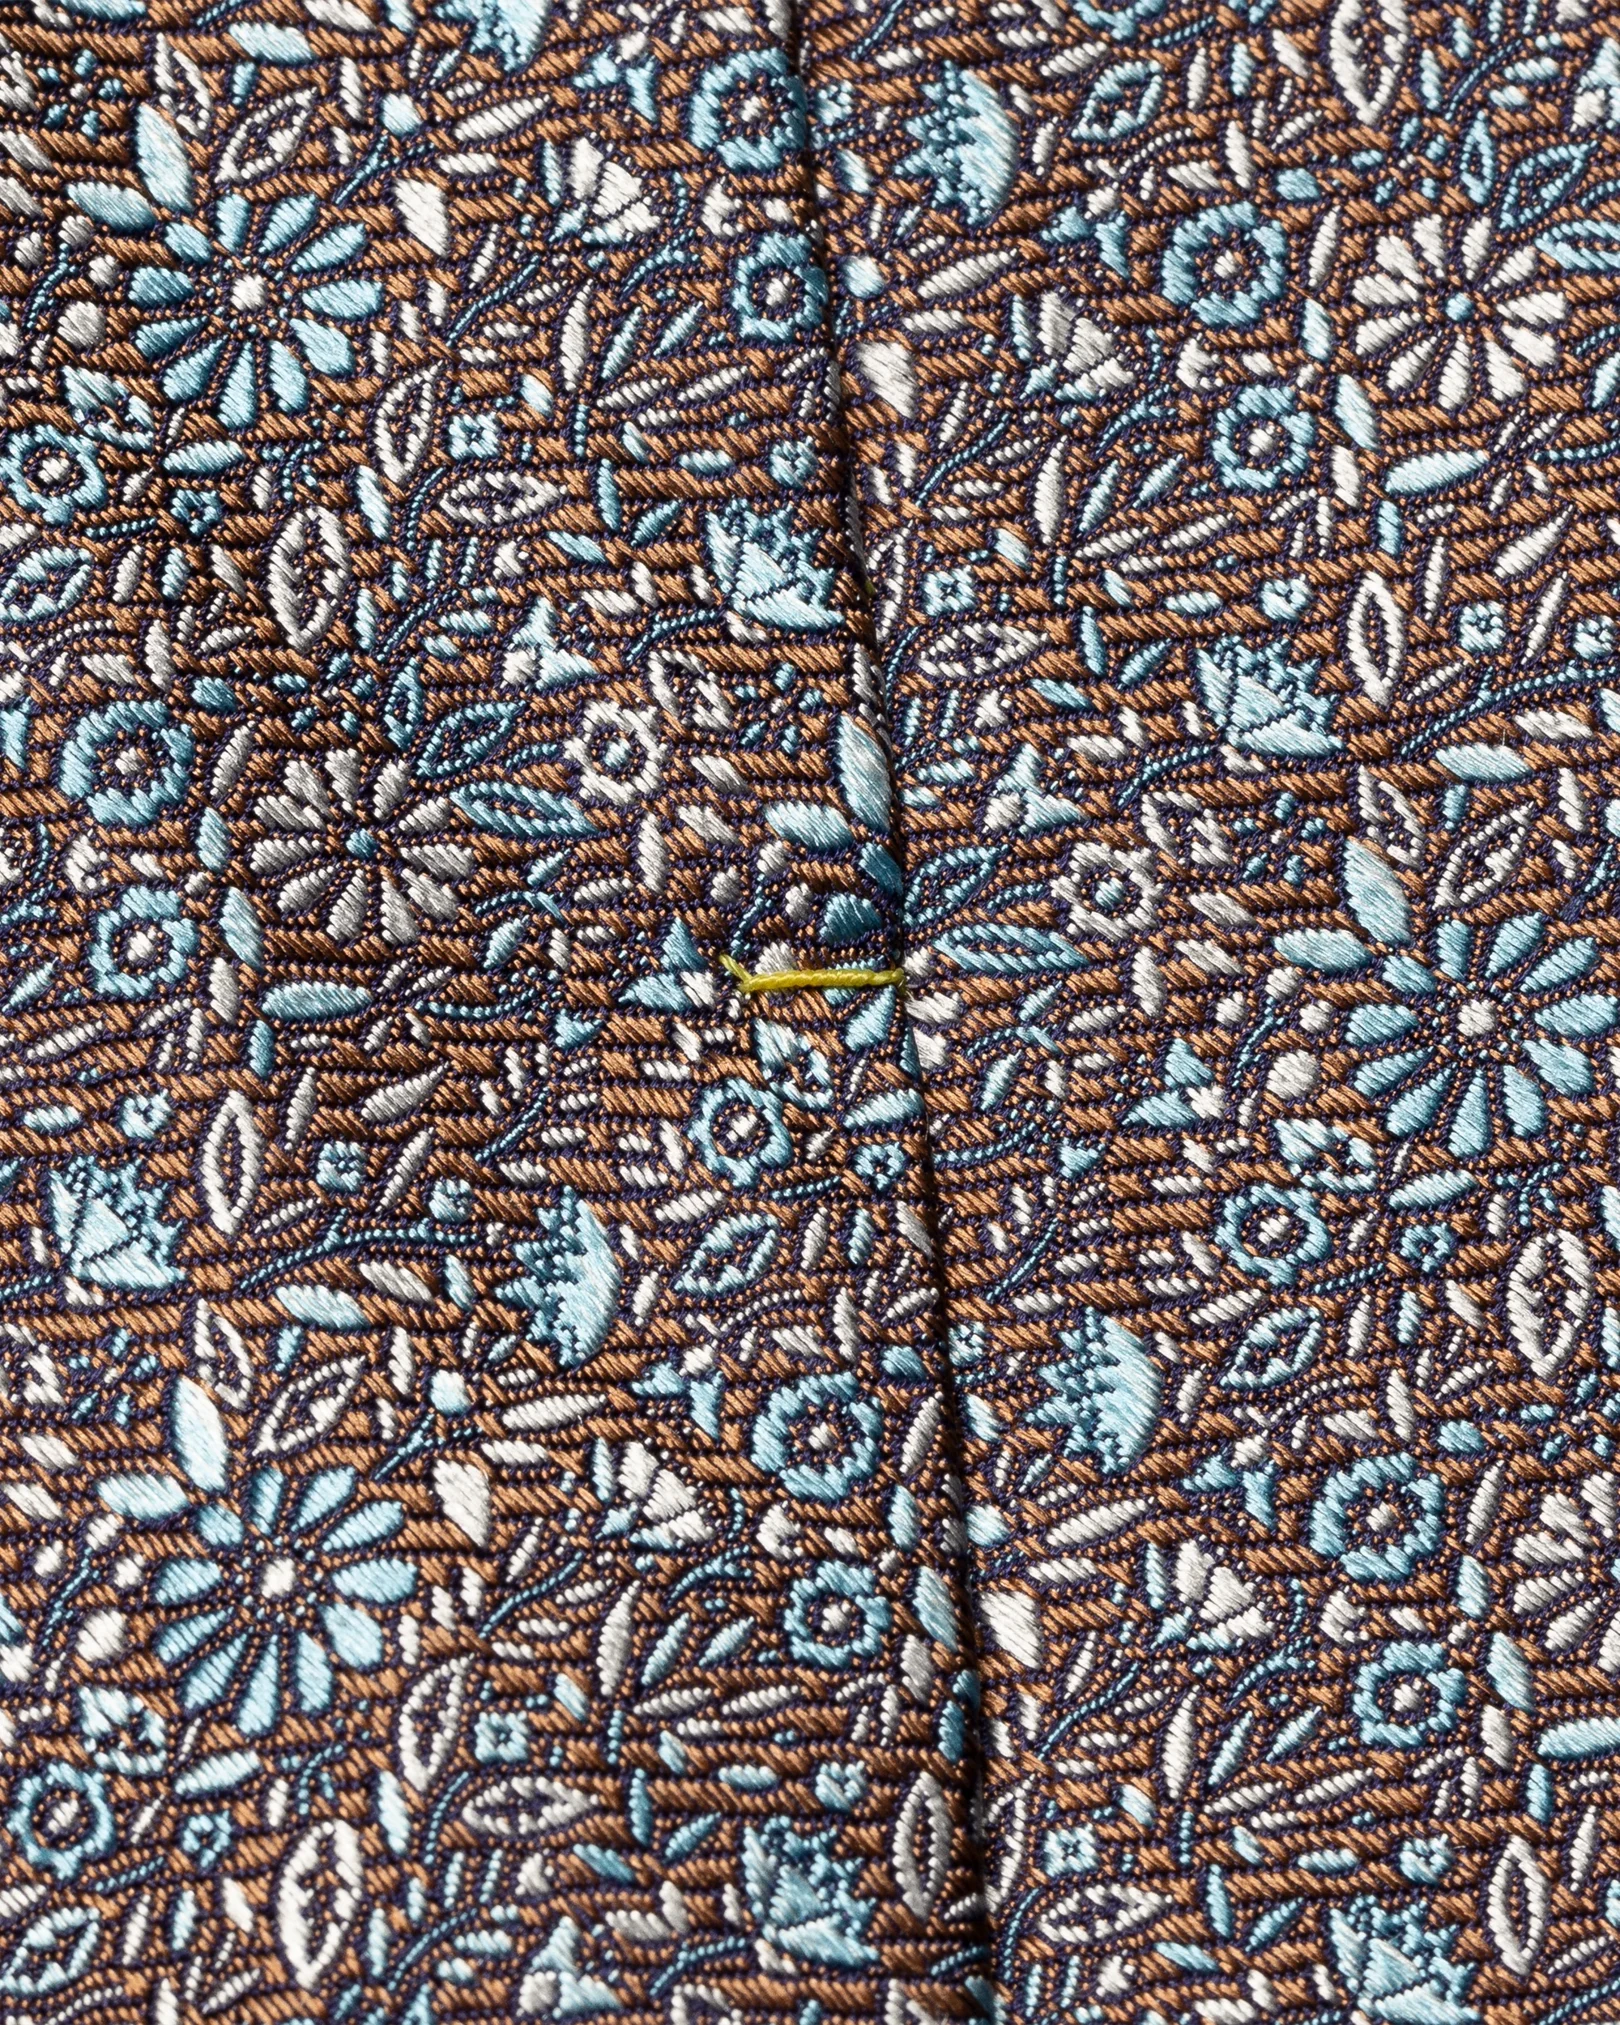 Eton - brown floral silk tie